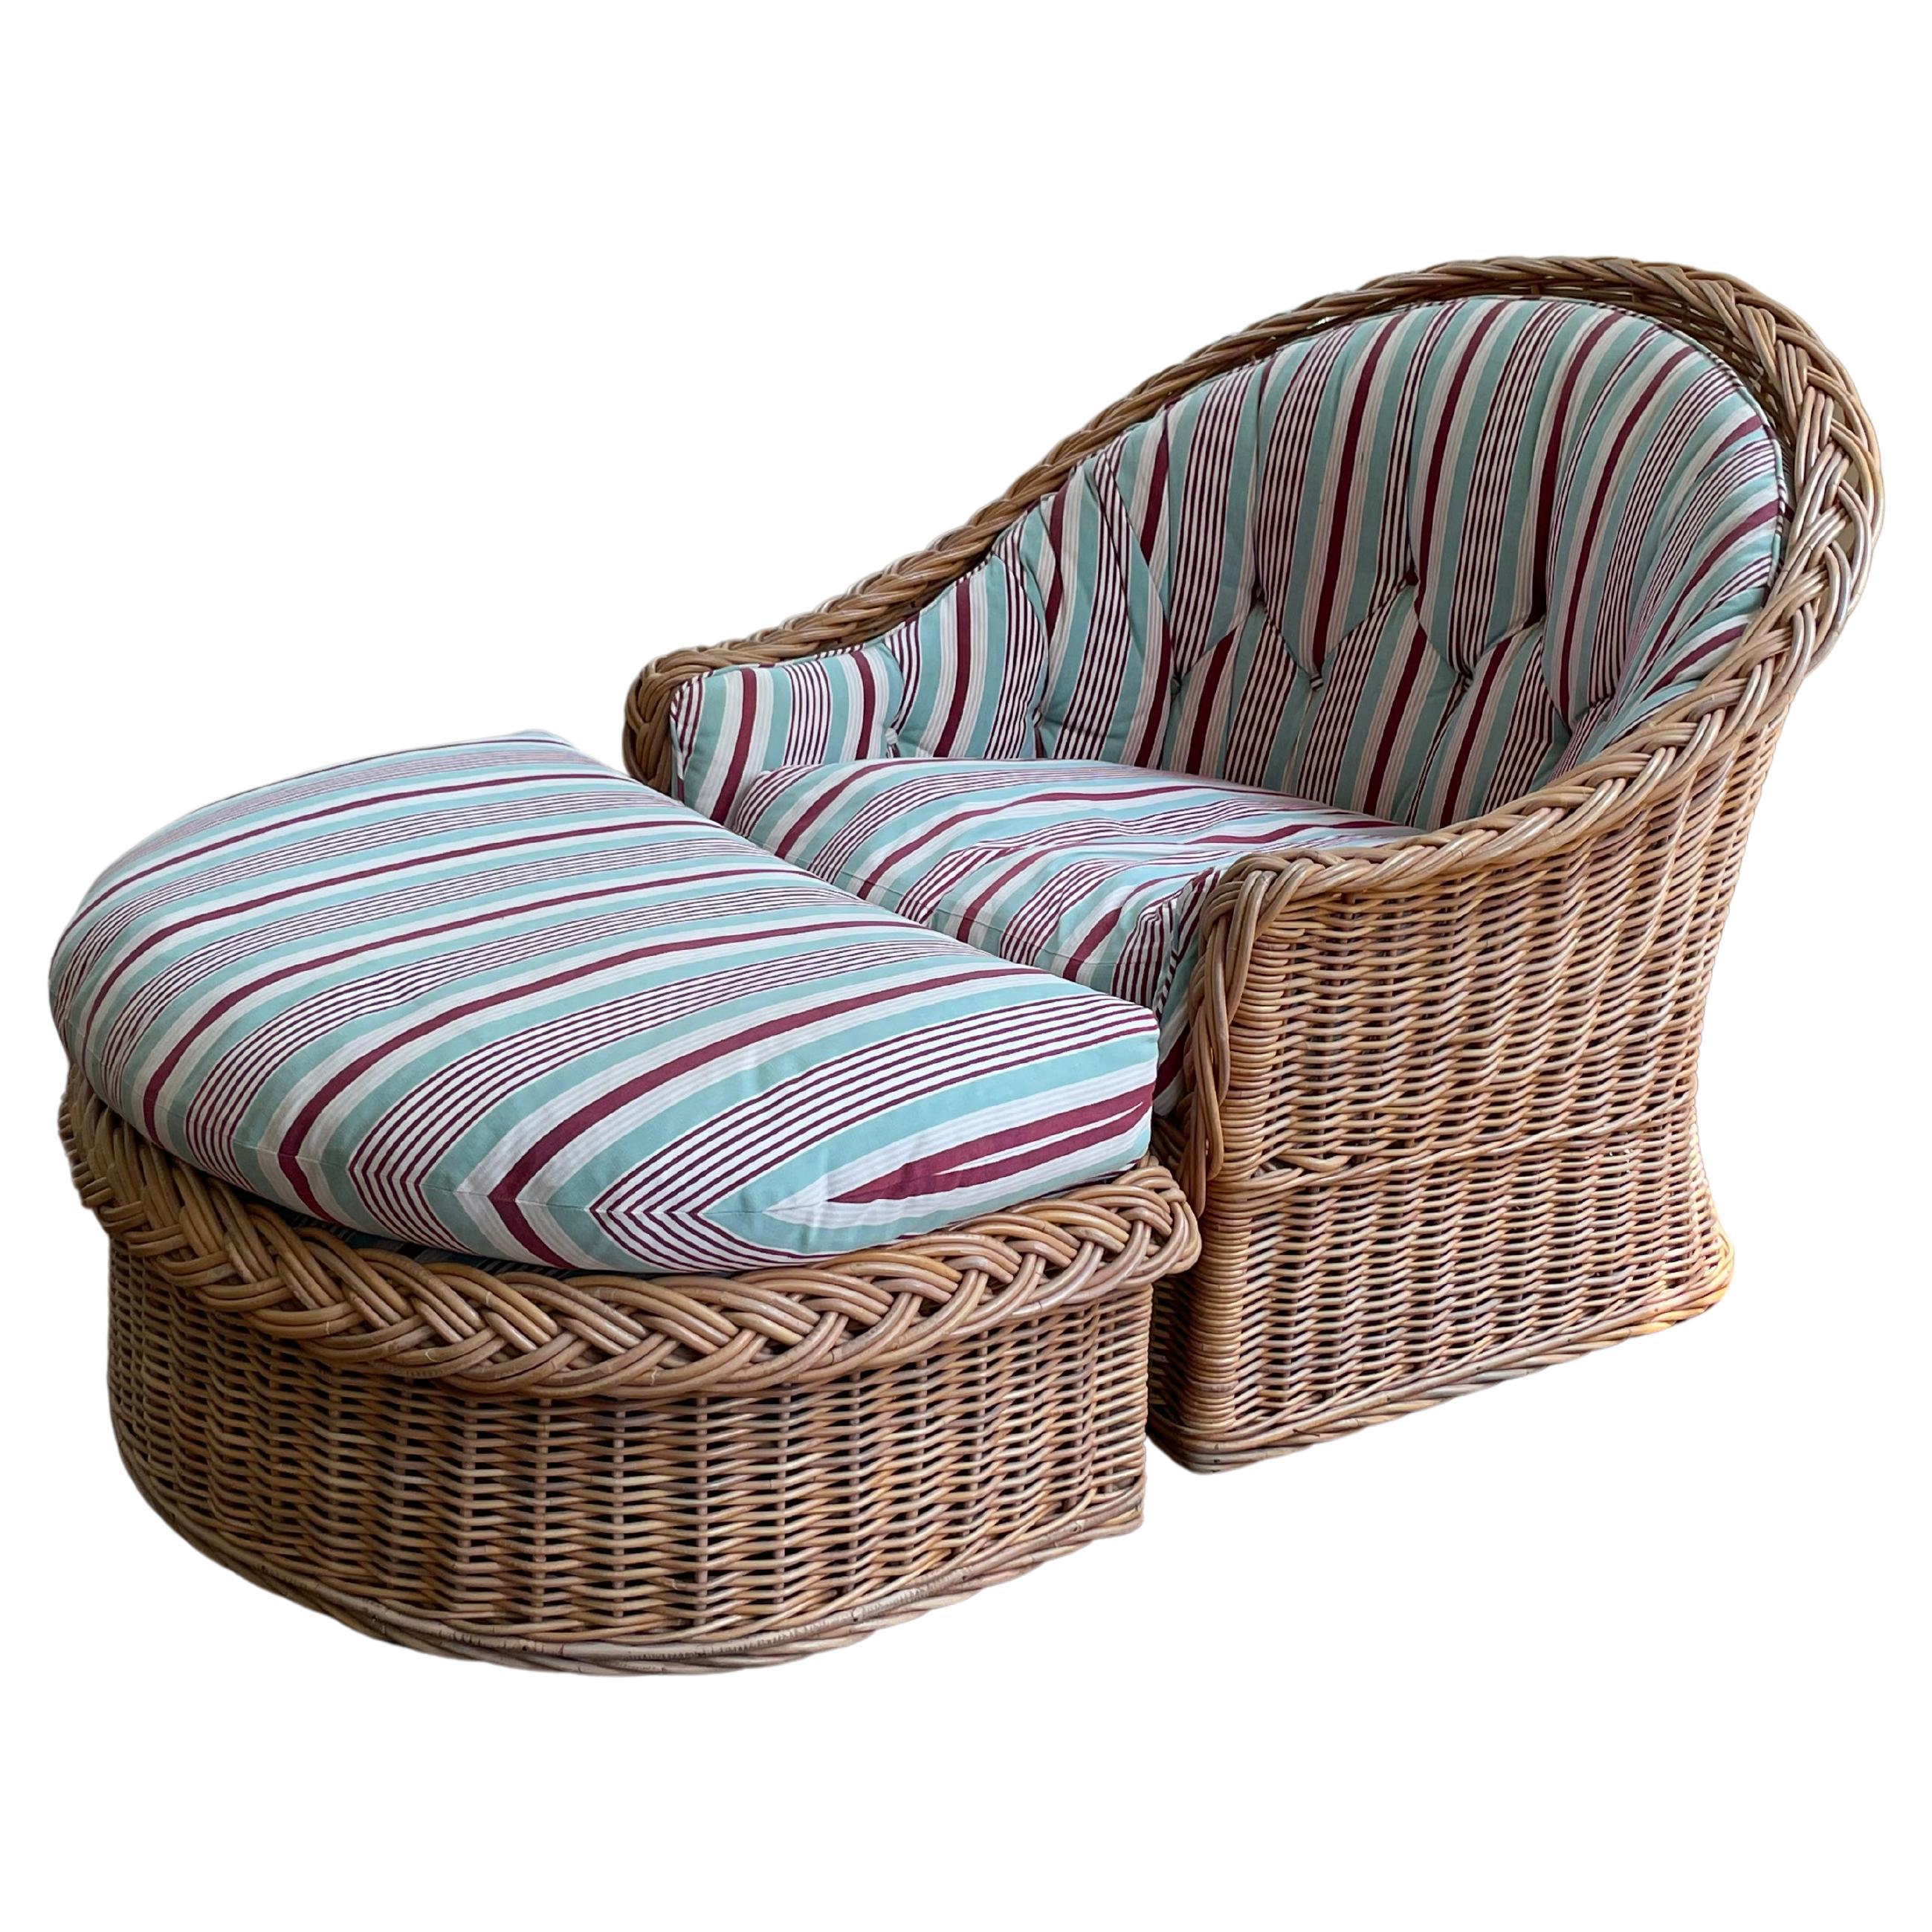 Wicker Works Italian Oversized Rattan Barrel Back Lounge Chair & Ottoman